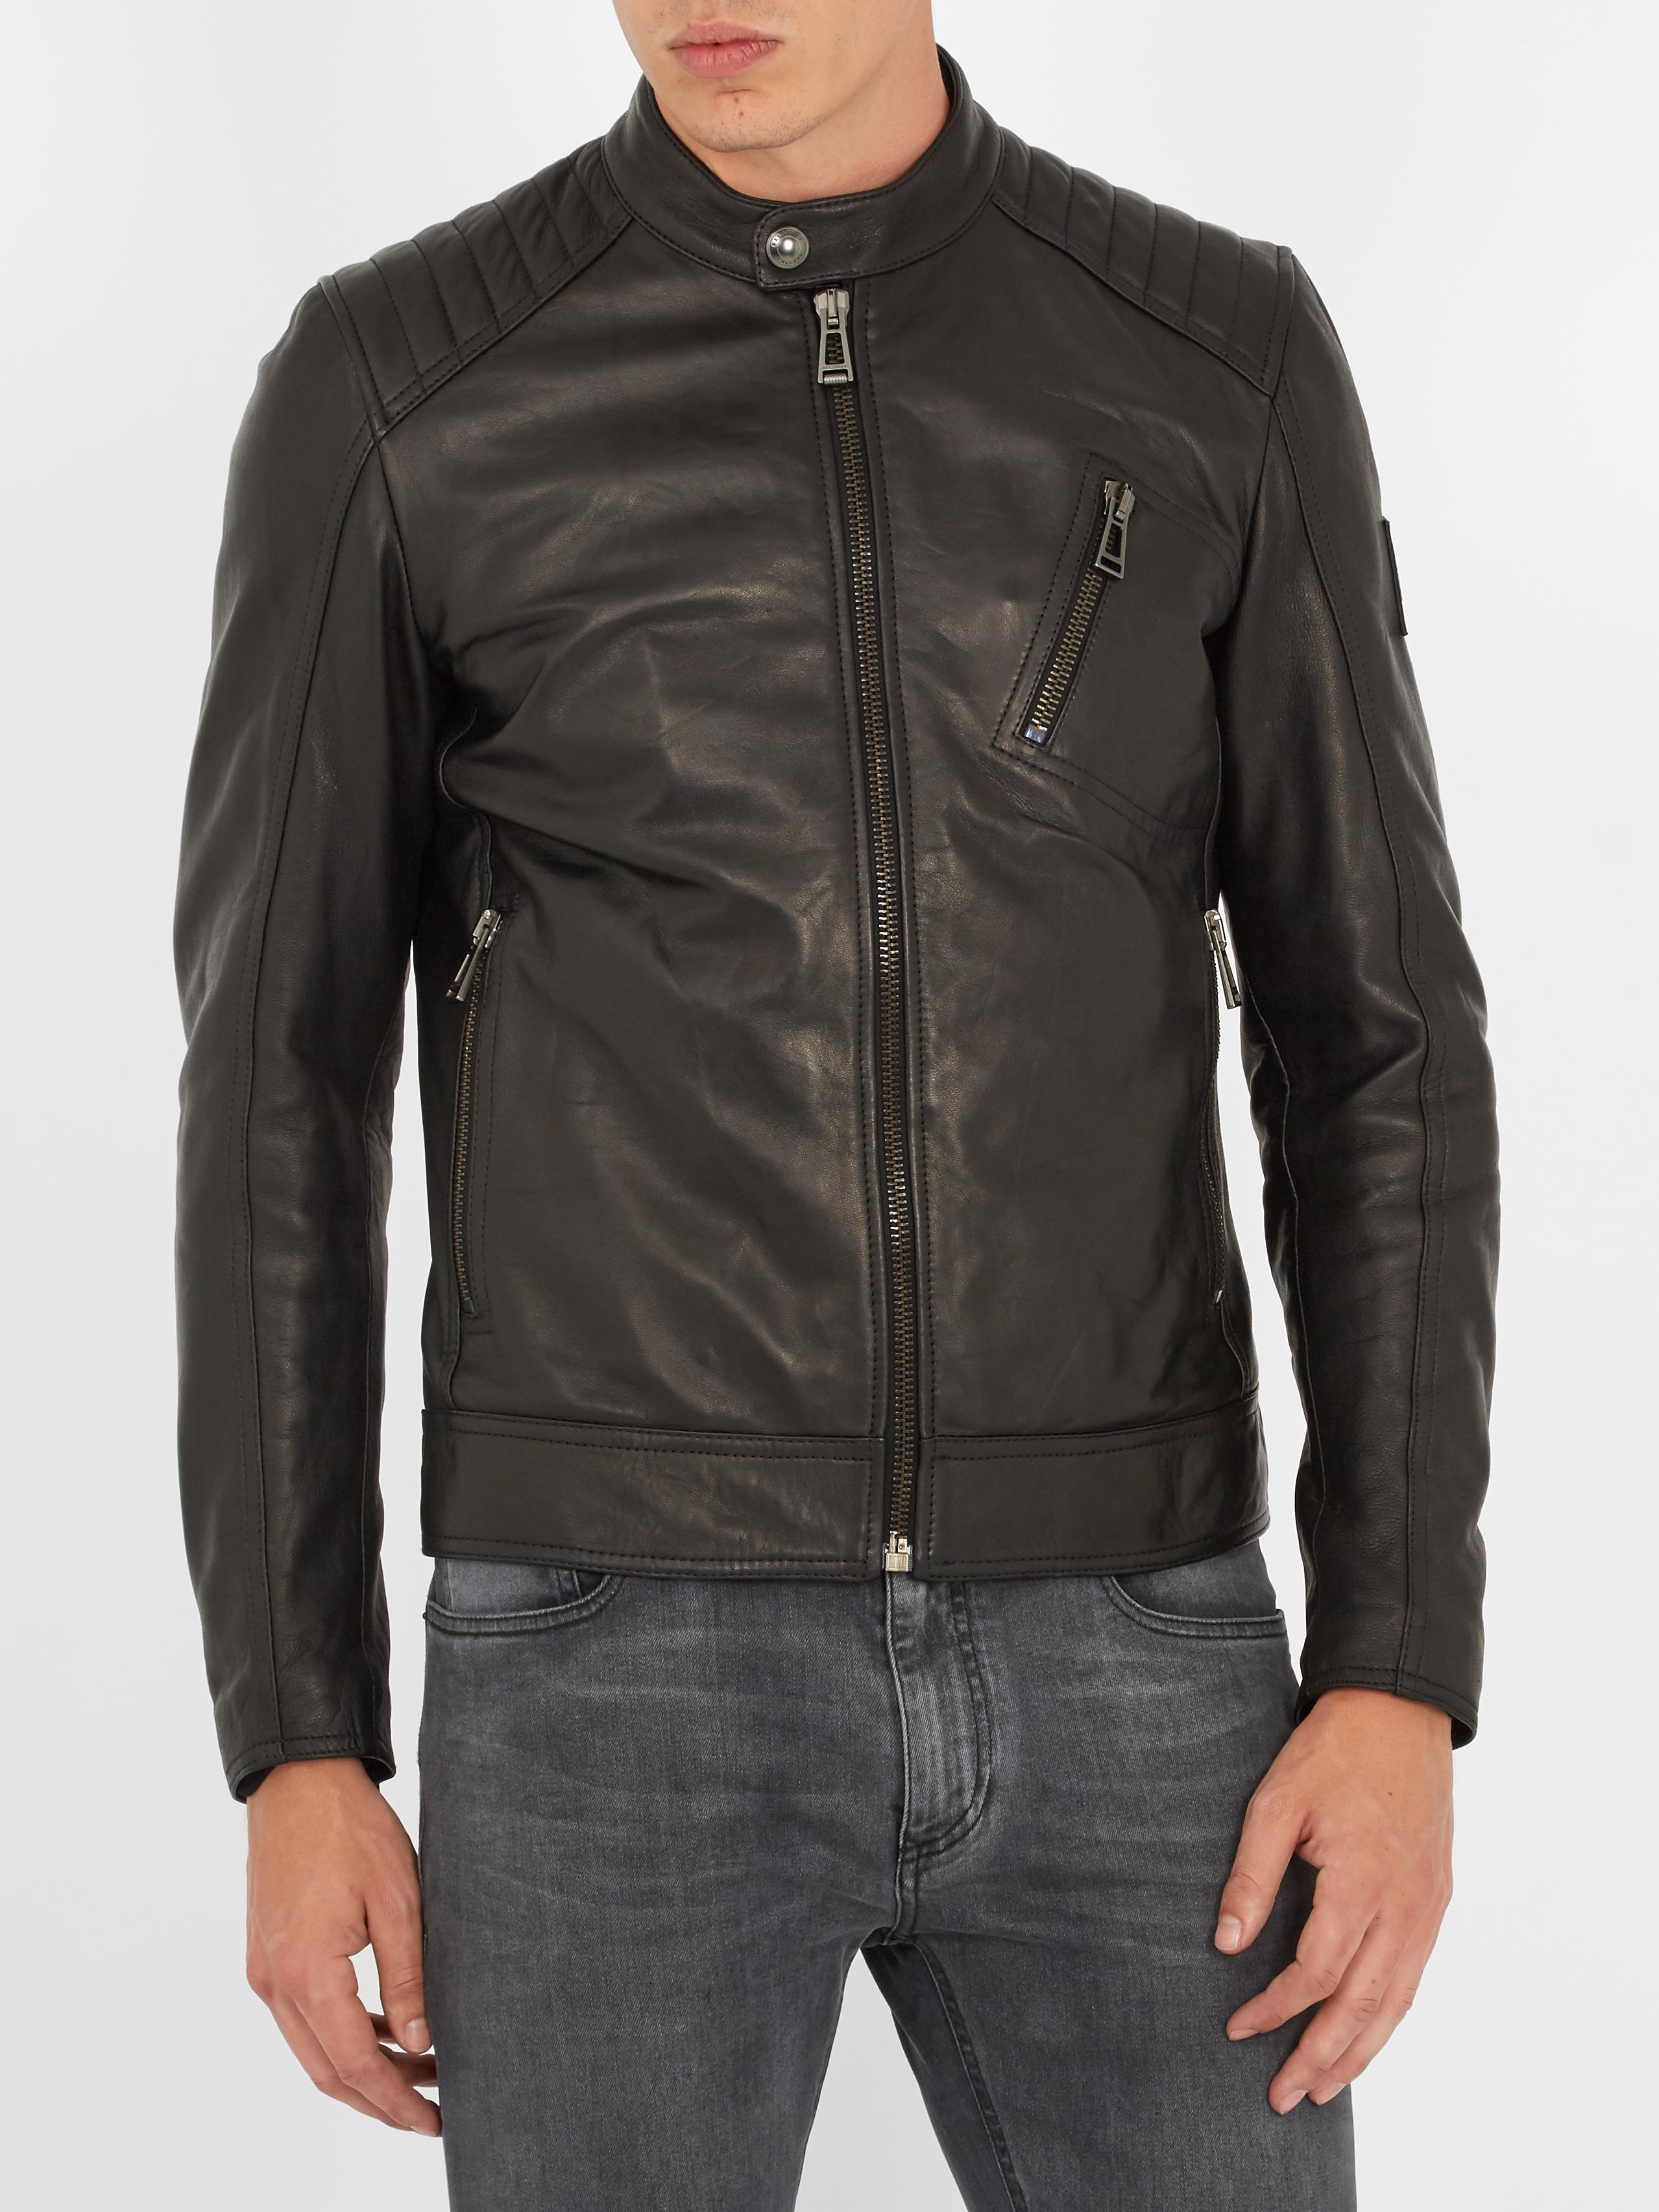 Belstaff V Racer Leather Jacket in Black for Men - Lyst